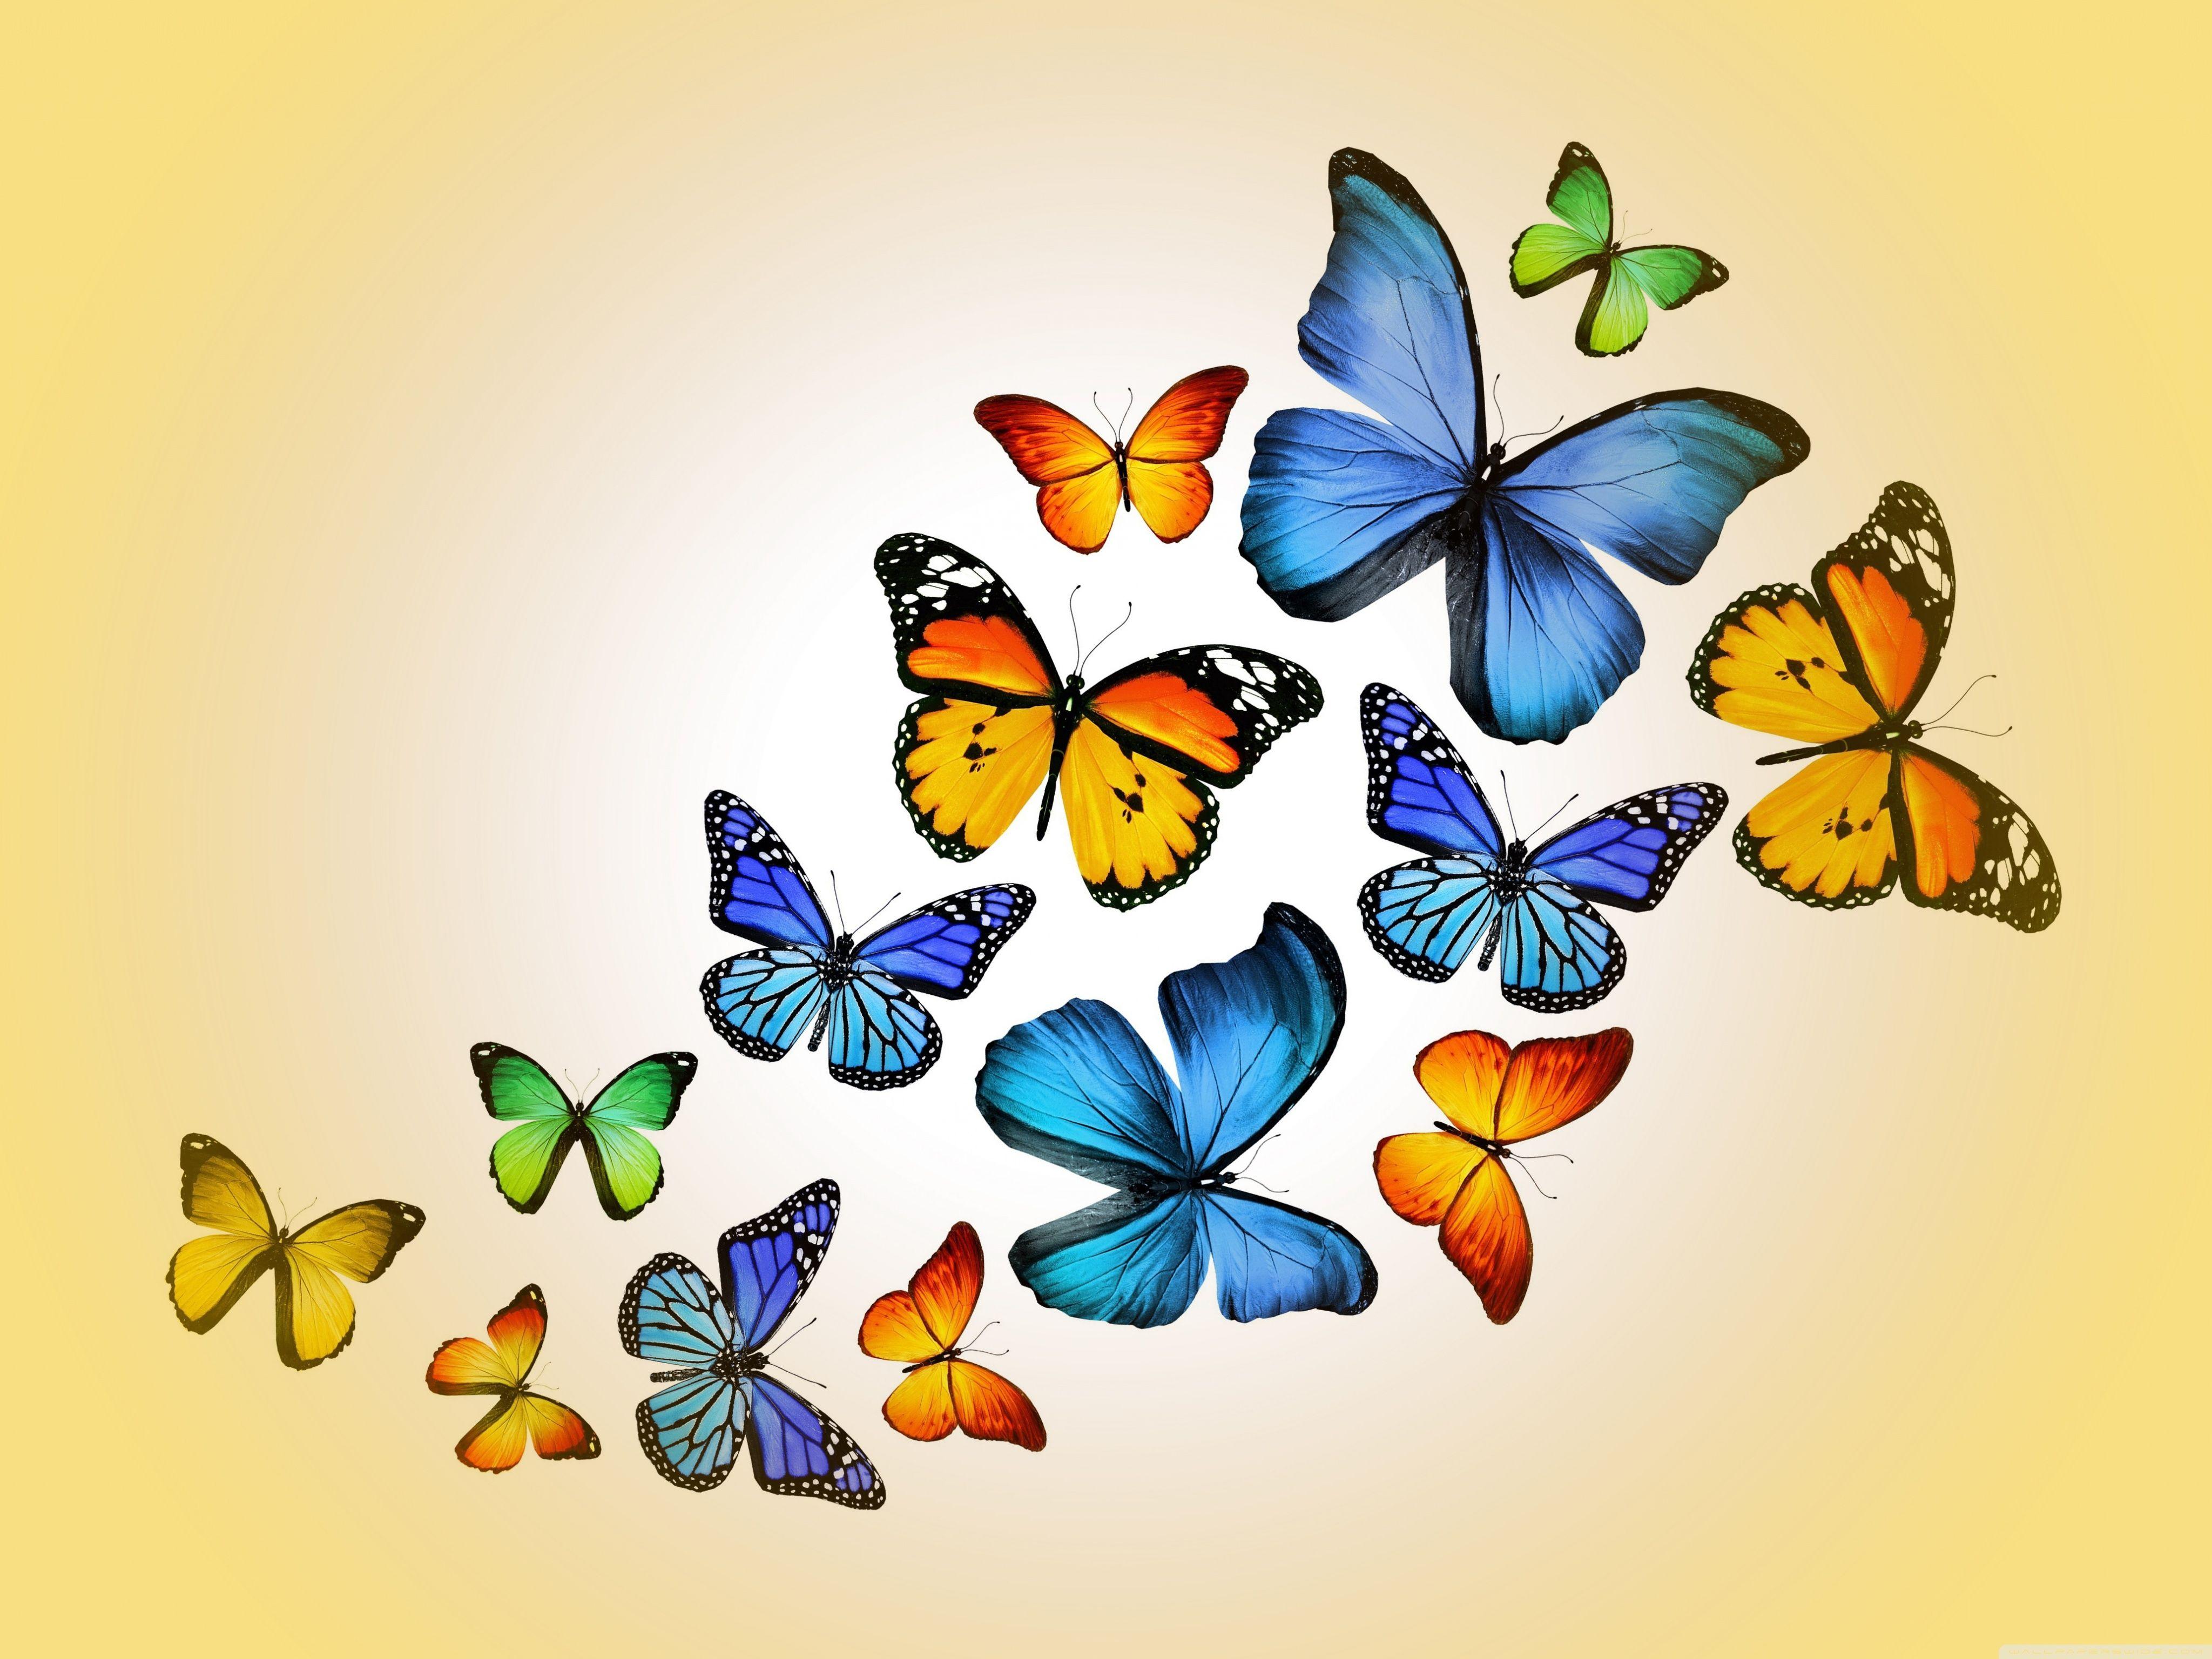 Butterfly wallpaper｜TikTok Search